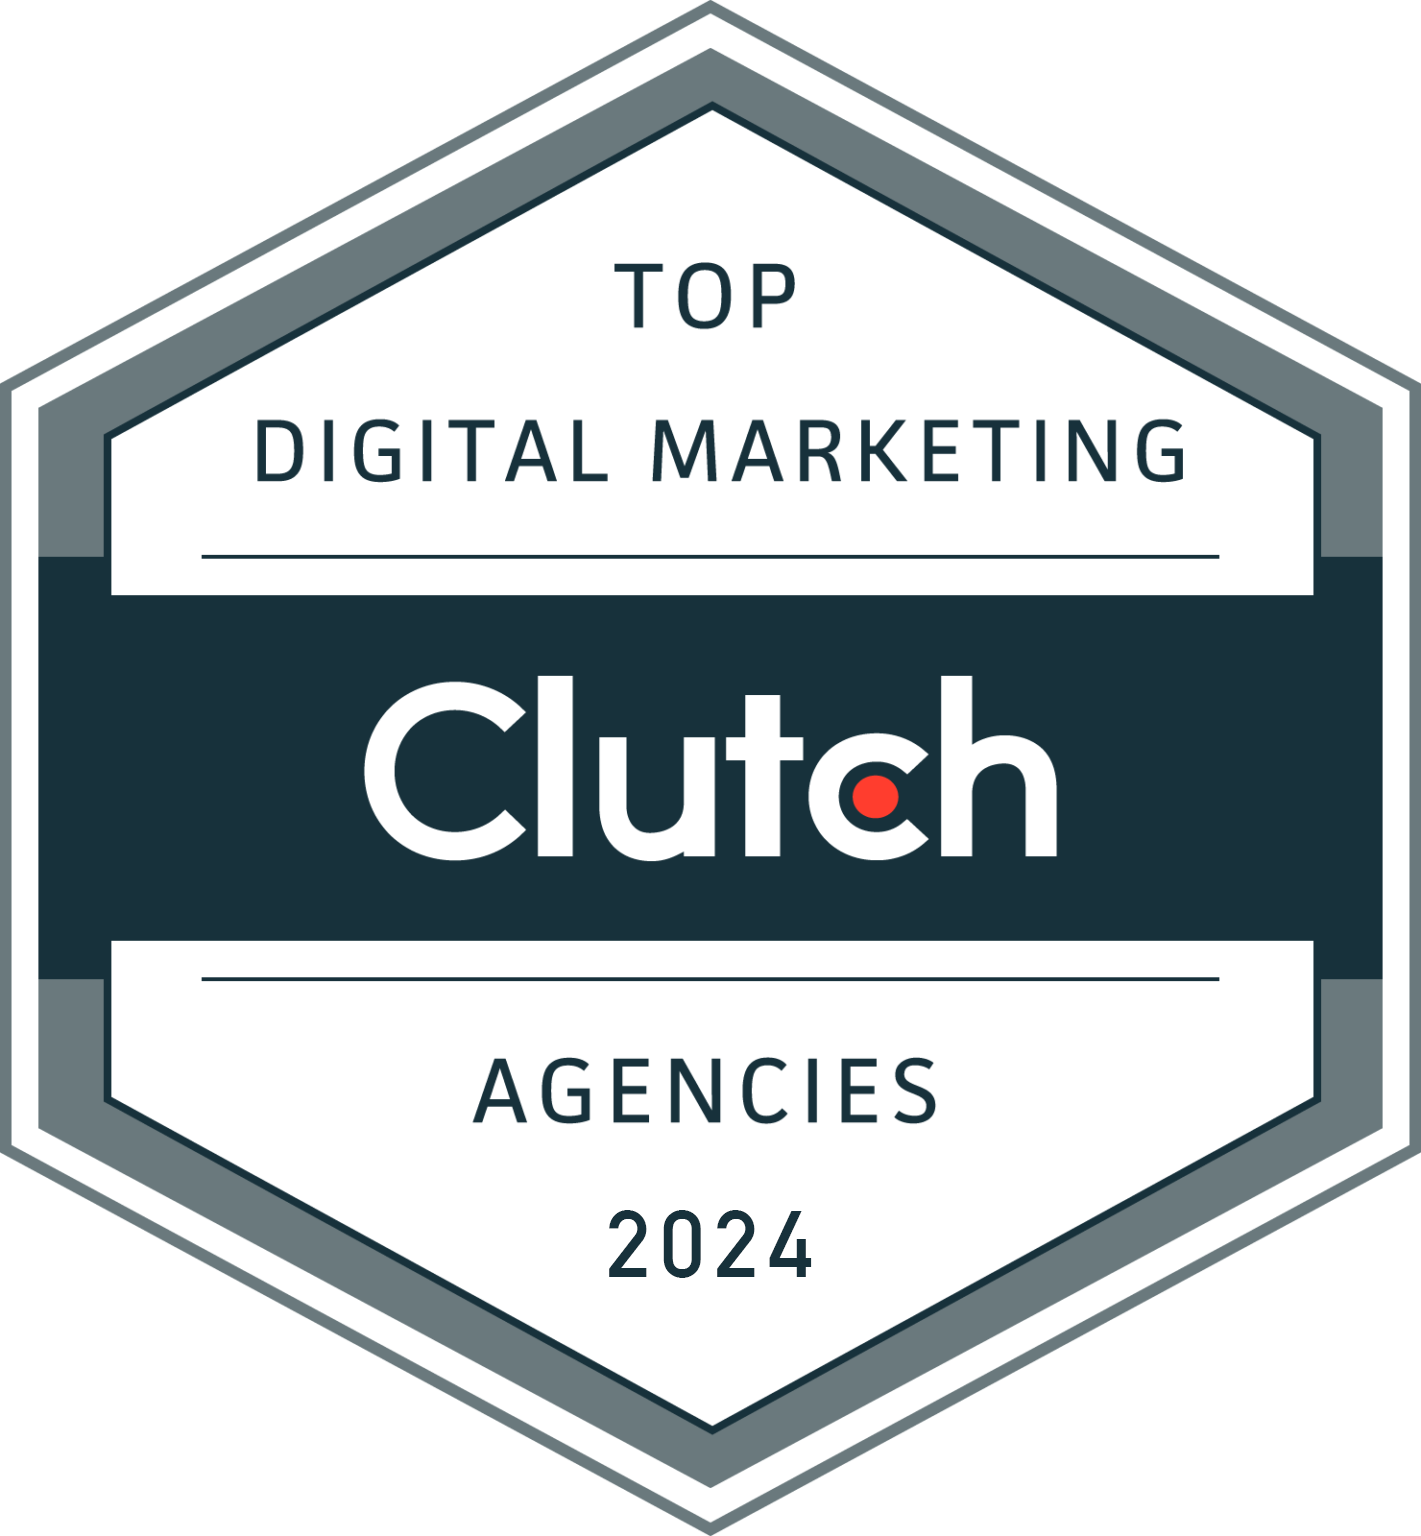 Top Digital Marketing Agencies 2021 by Clutch